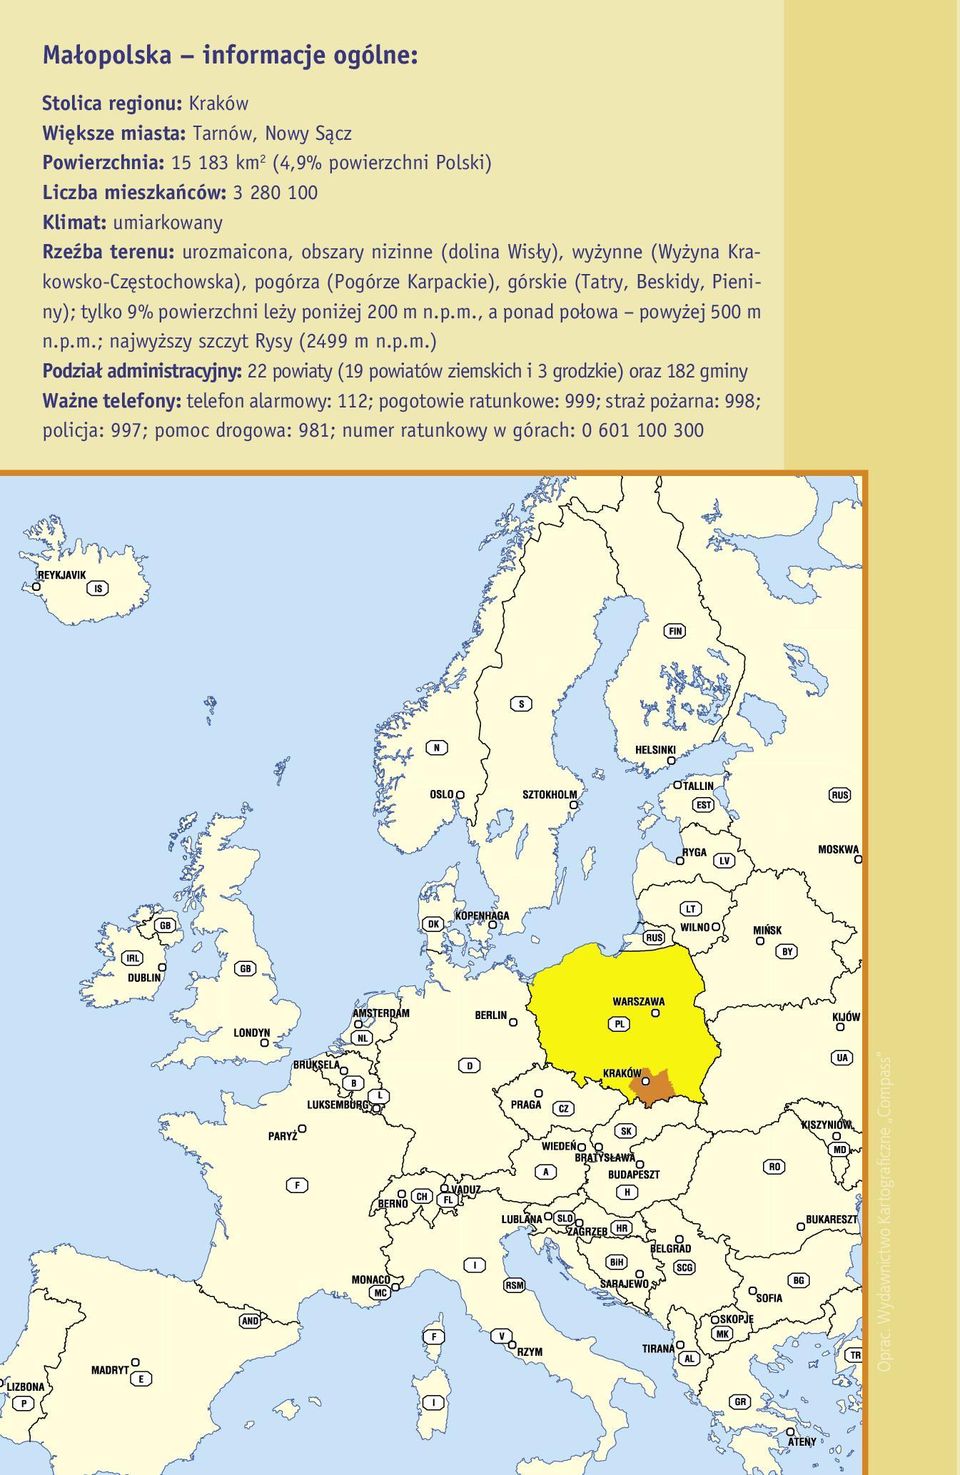 umiarkowany Rzeźba terenu: urozmaicona, obszary nizinne (dolina Wisły), wyżynne (Wyżyna Krakowsko-Częstochowska), pogórza (Pogórze Karpackie), górskie (Tatry, Beskidy, Pieniny); tylko 9%